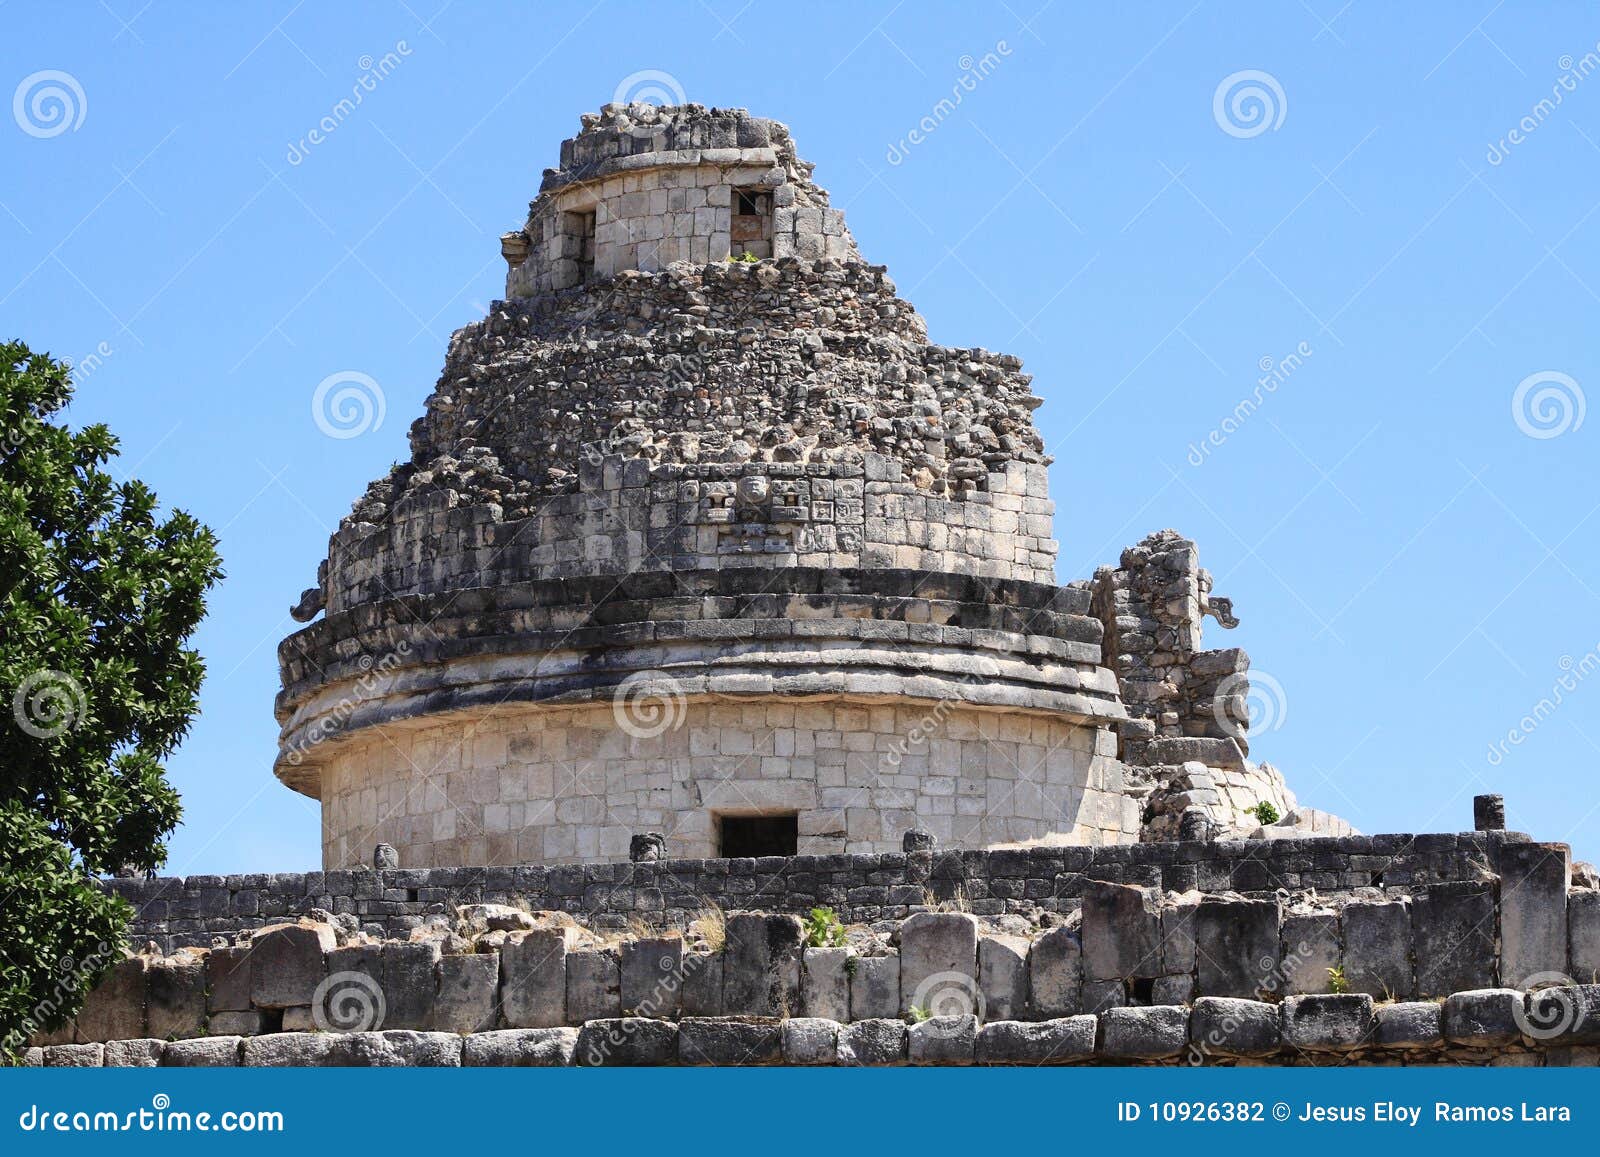 mayan observatory in chichenitza pyramids in yucatan, mexico.